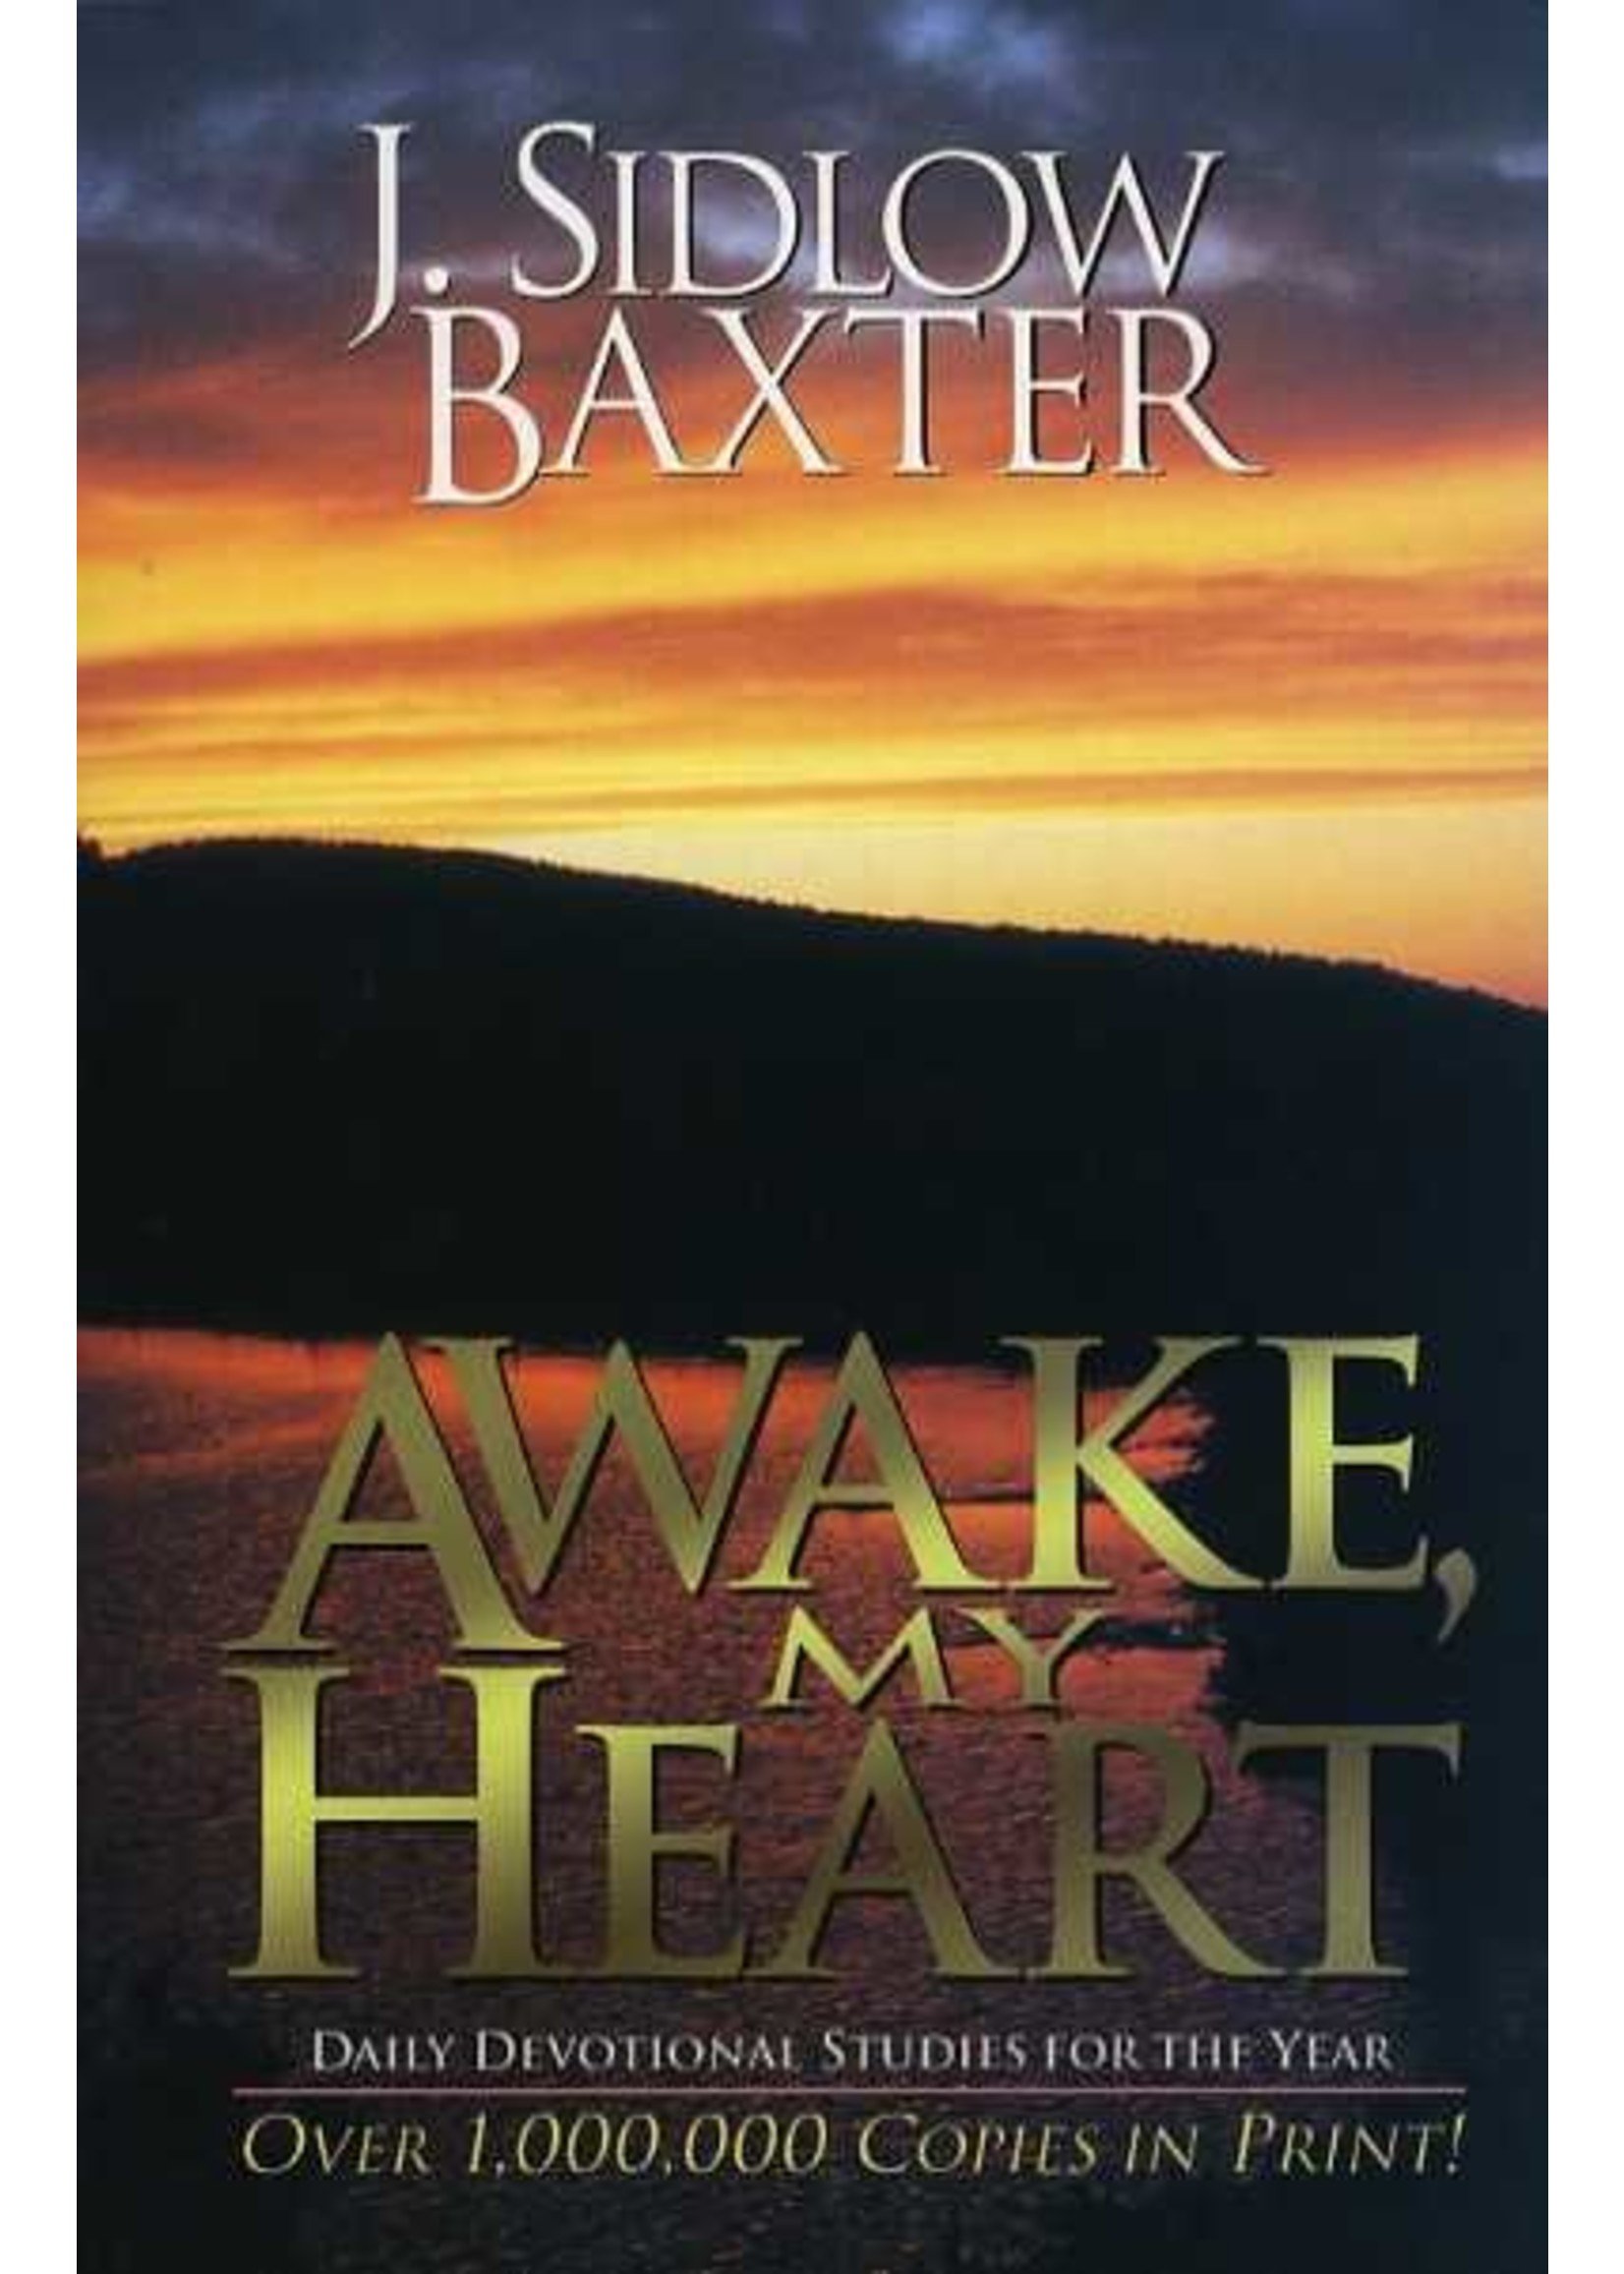 Awake My Heart - Sidlow Baxter